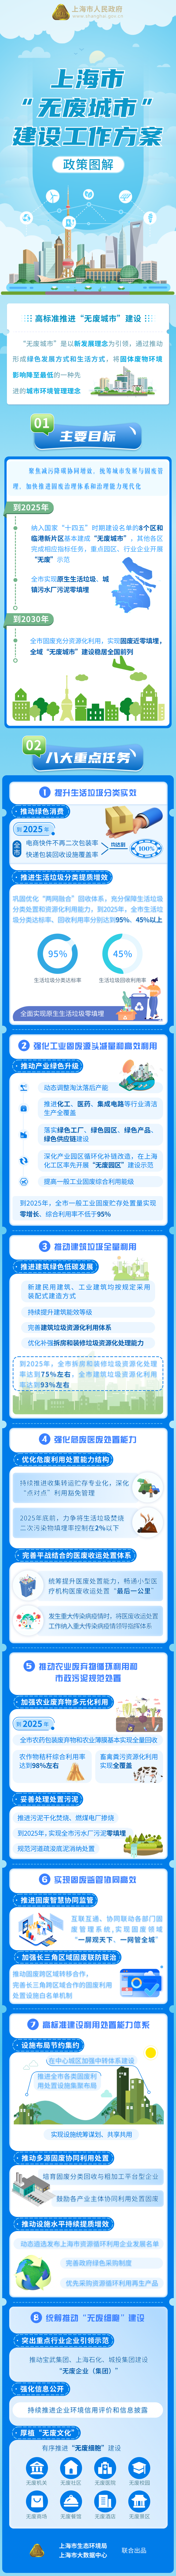 《上海市“无废城市”建设工作方案》政策图解.png